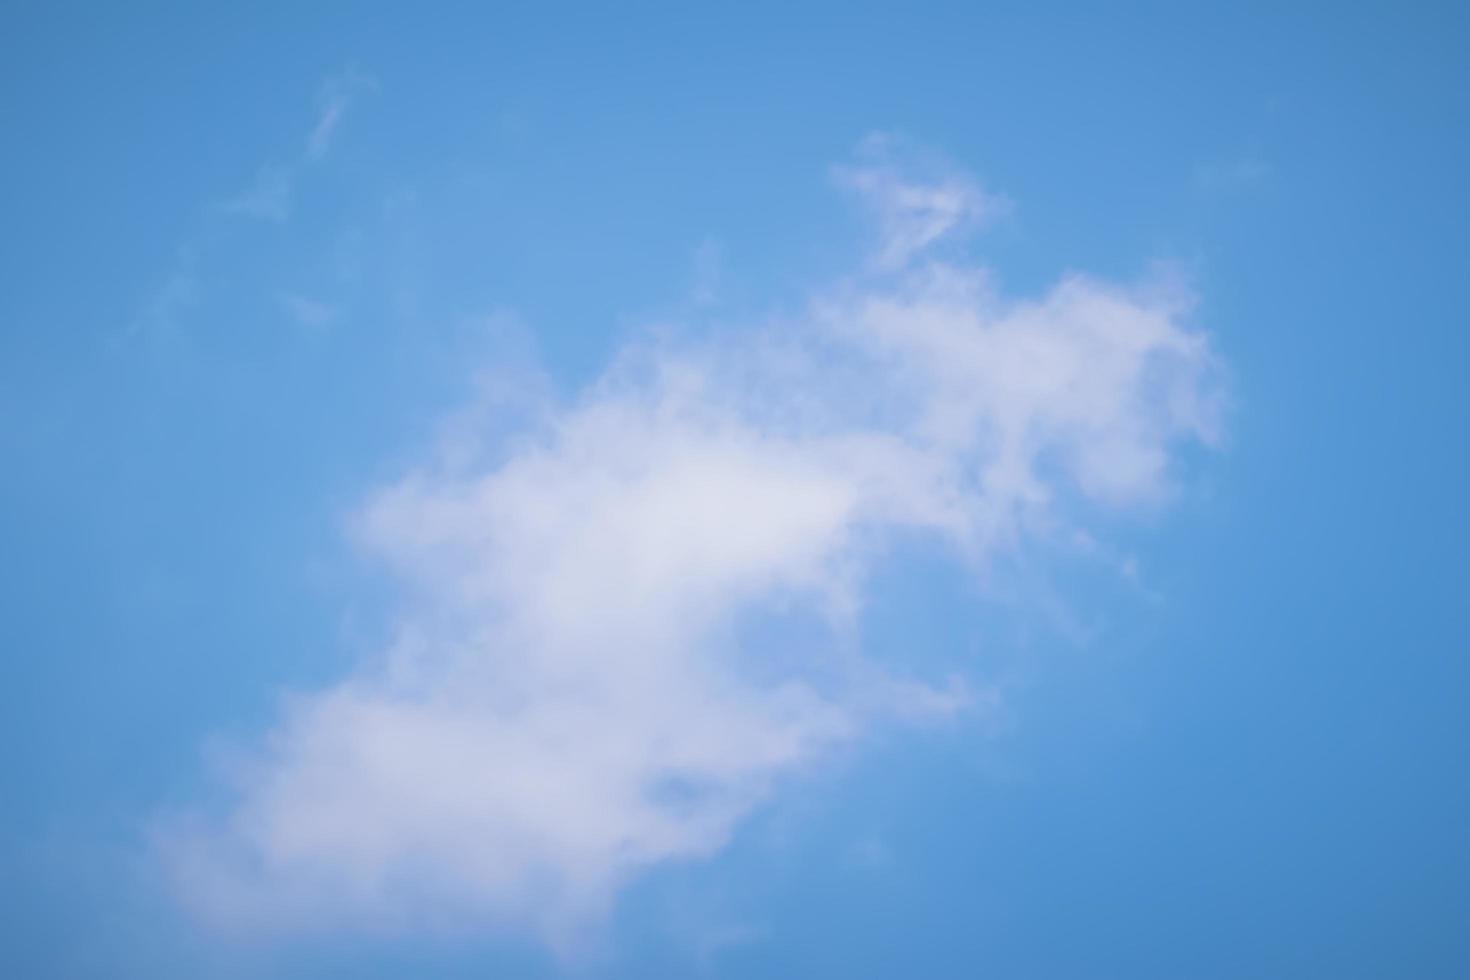 ciel bleu avec des nuages blancs photo